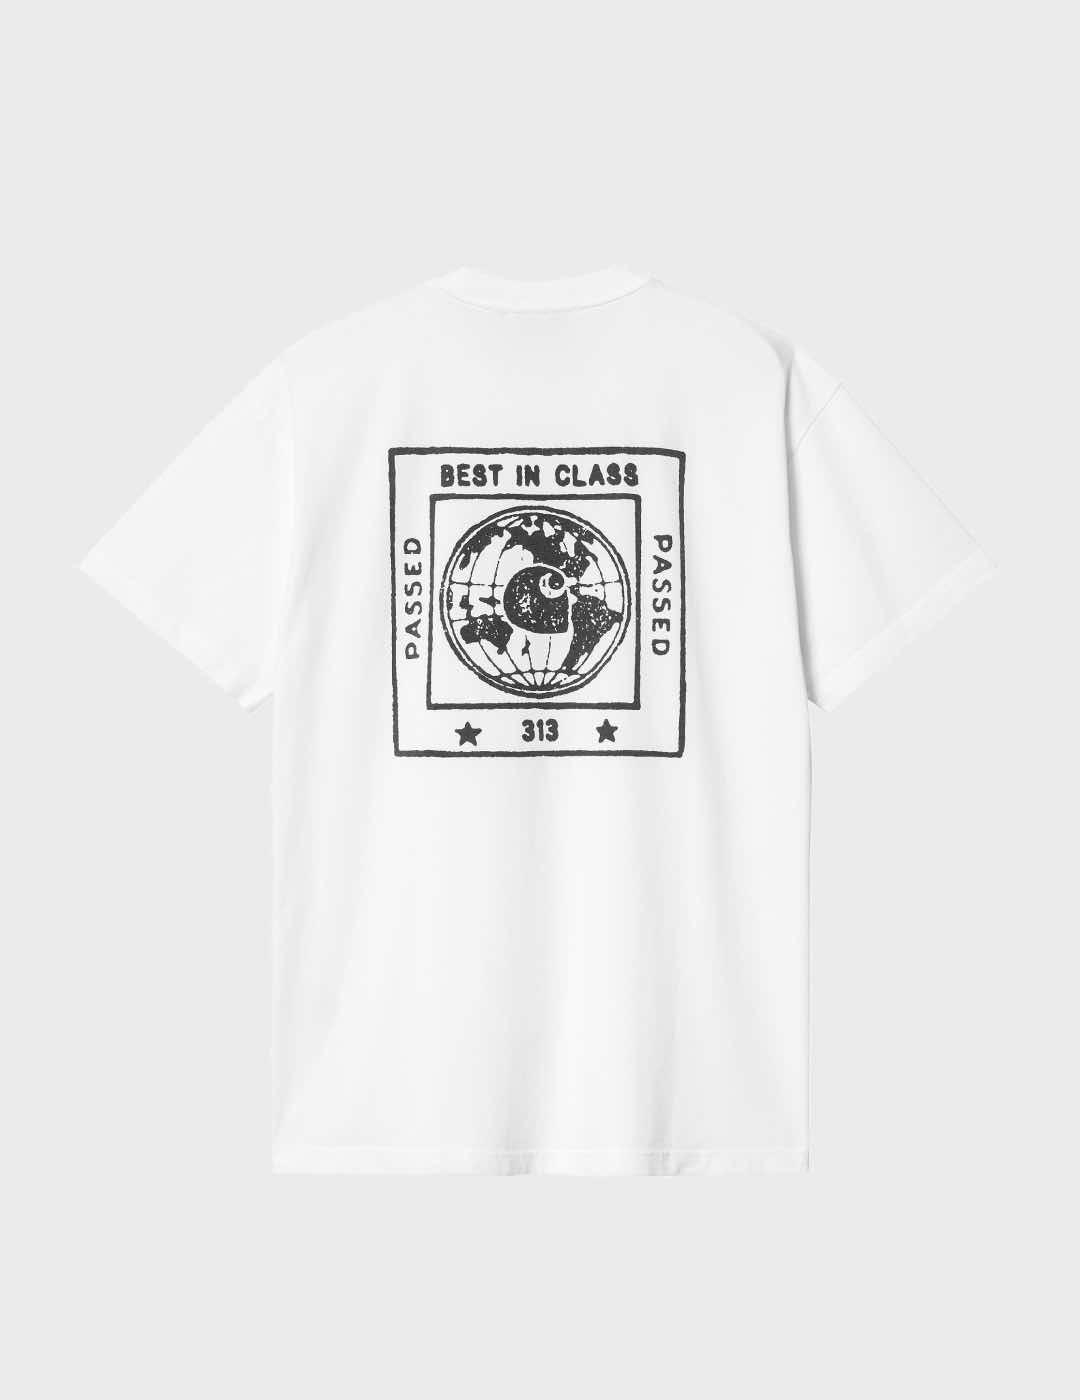 Camiseta Carhartt WIP S/S Stamp White/Black